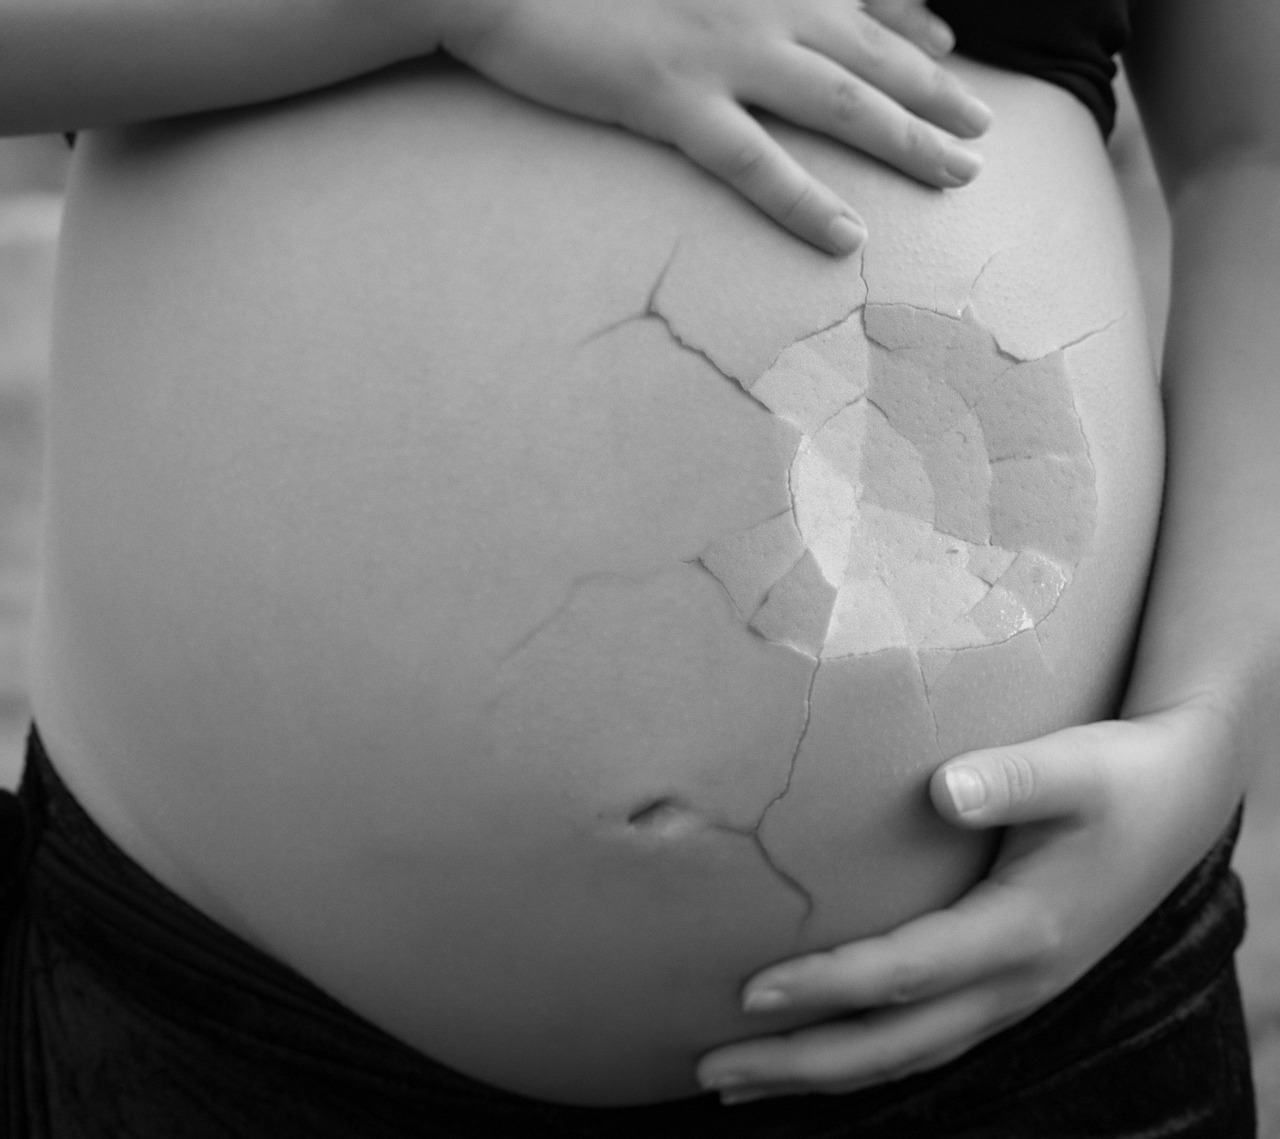 A terhességi diabétesz növelheti a fejlődési rendellenességek kialakulását